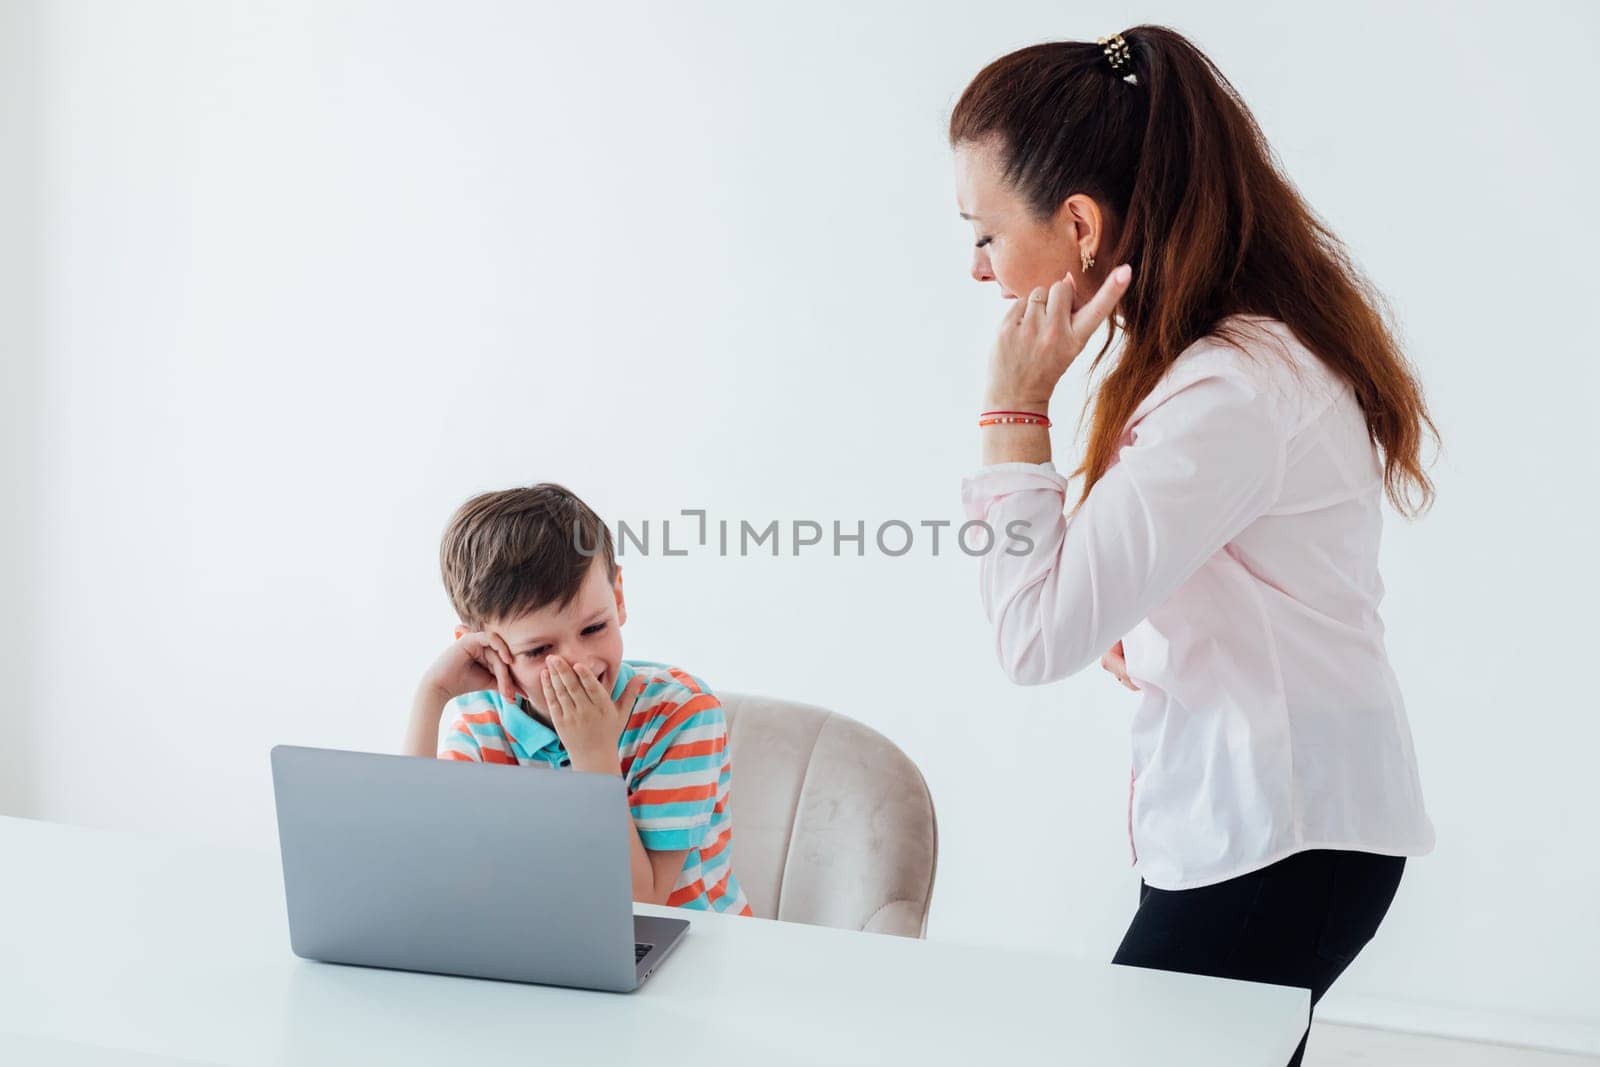 Woman teaching boy on laptop in school classroom by Simakov